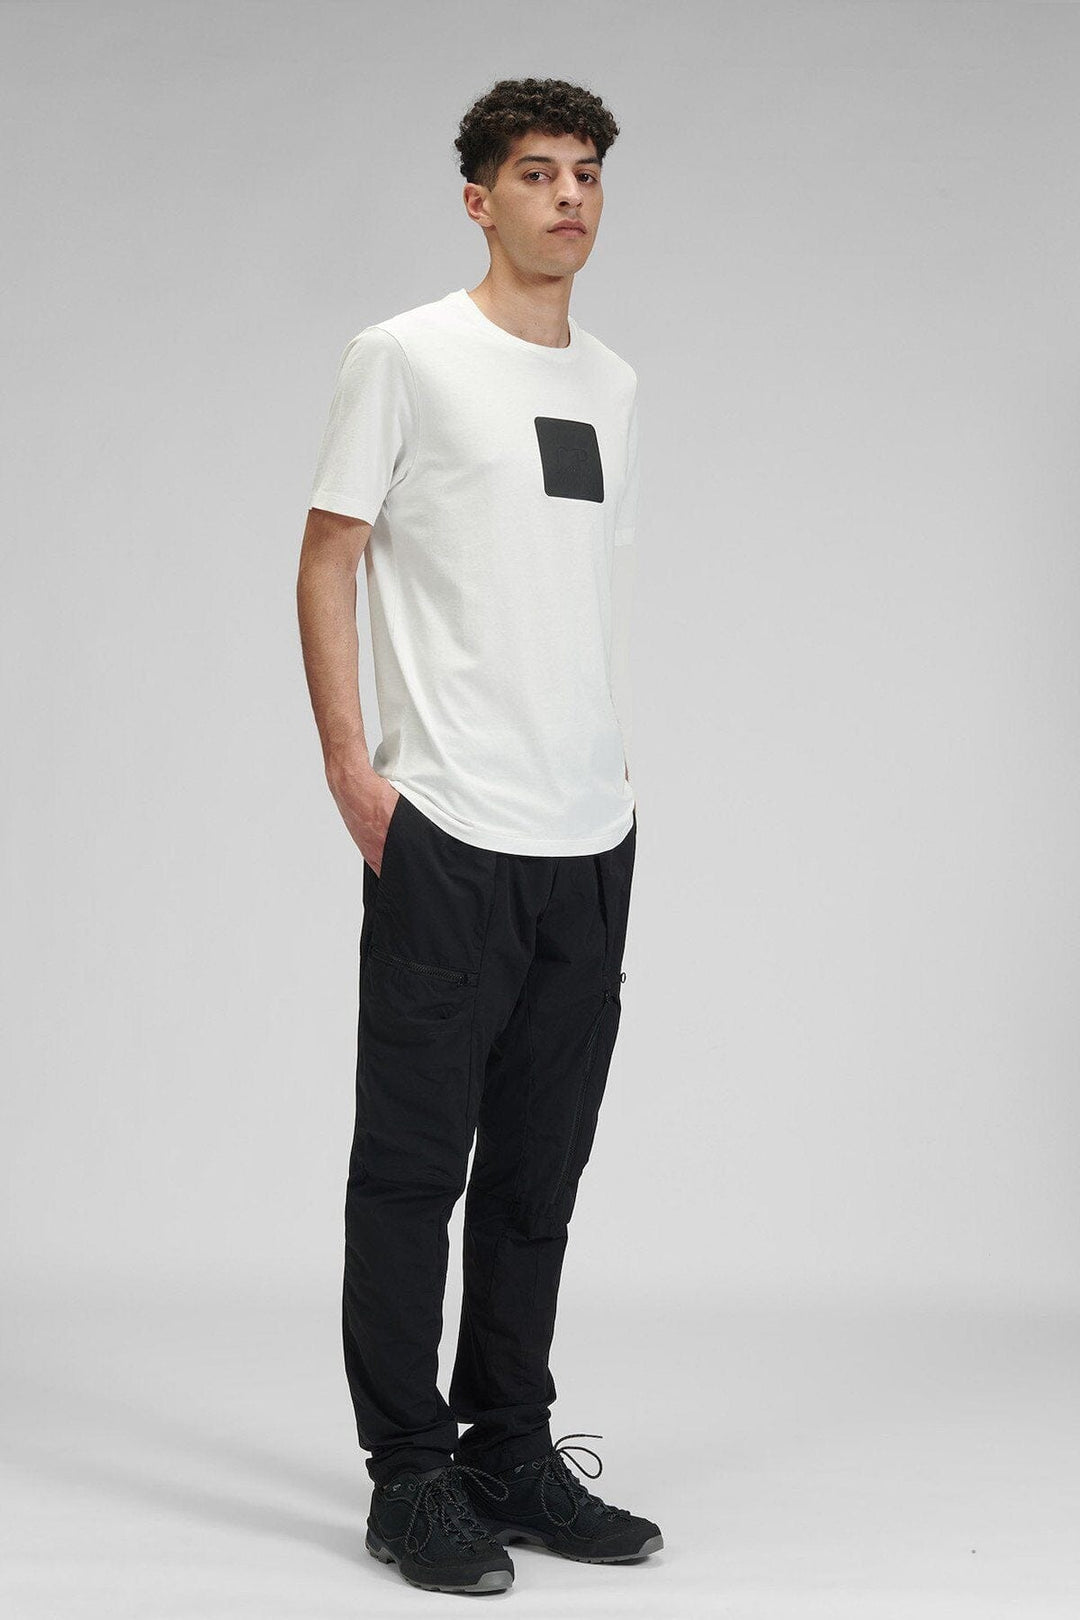 T-shirt blanc avec logo noir Homme - Hauts - T-shirt C.P Company